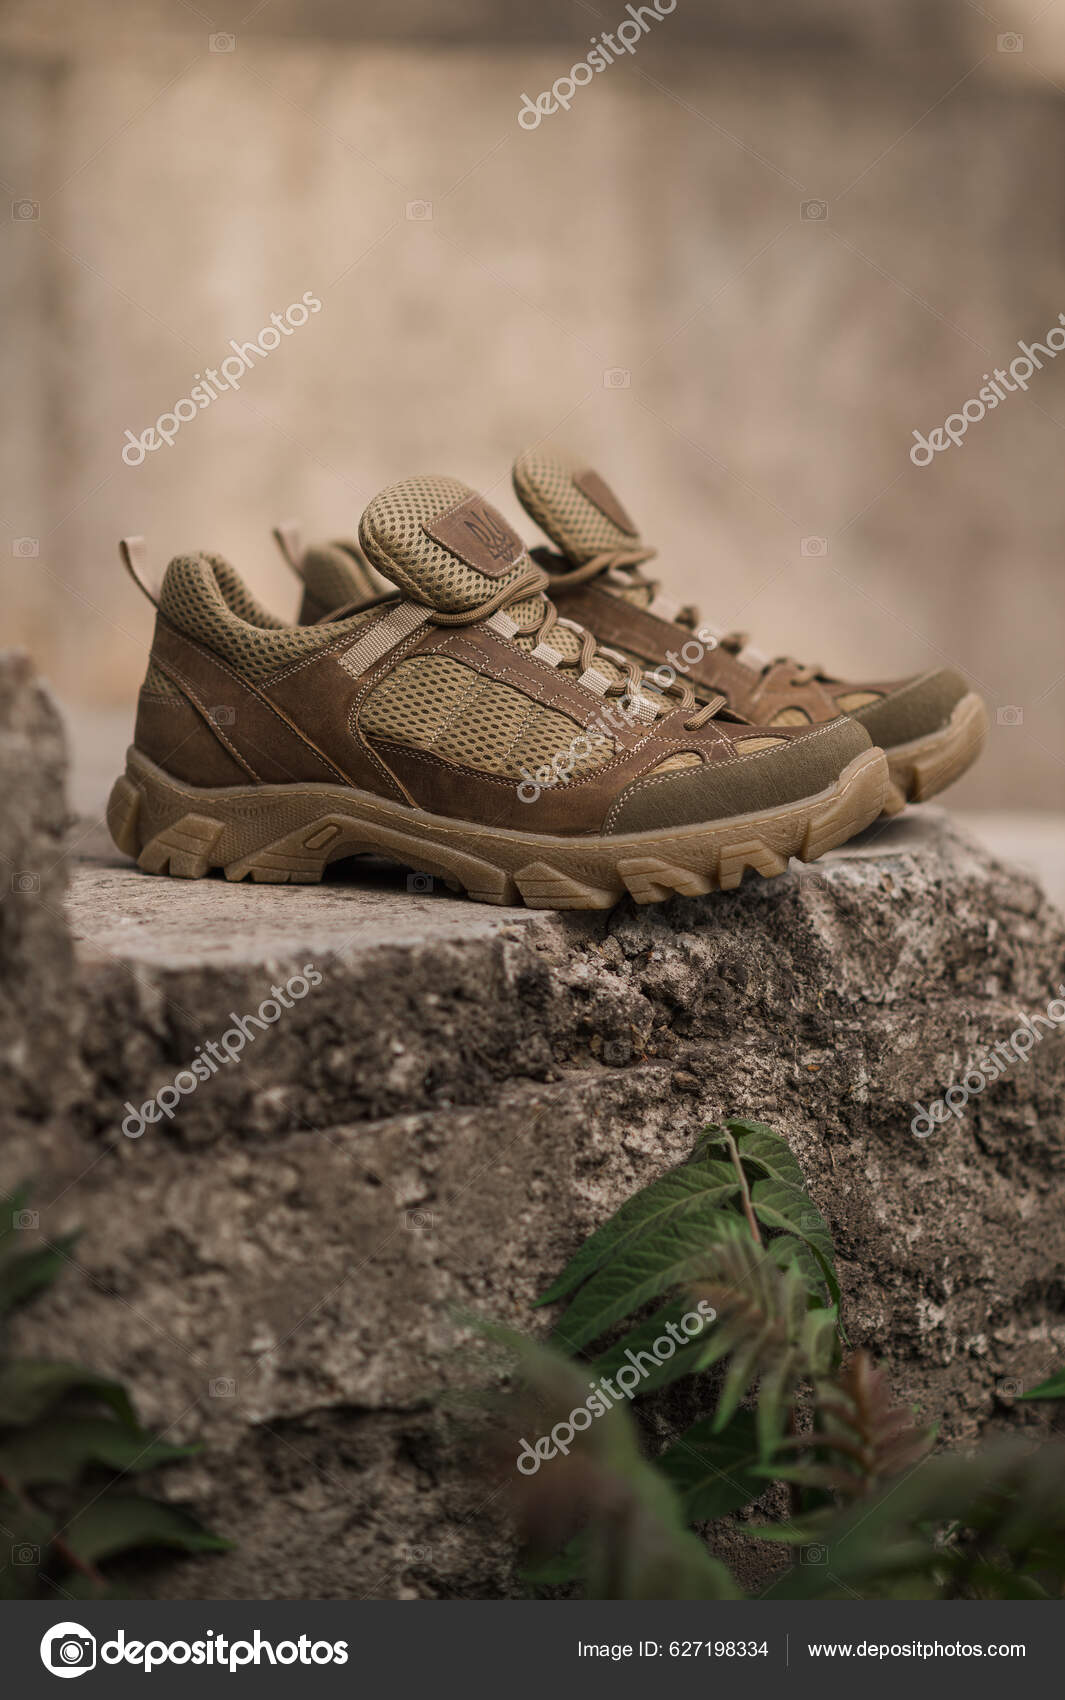 Sapatilhas Exército Pedras Calçado Militar Sapatilhas Para Terreno Montanha  fotos, imagens de © fly_wish #627198334